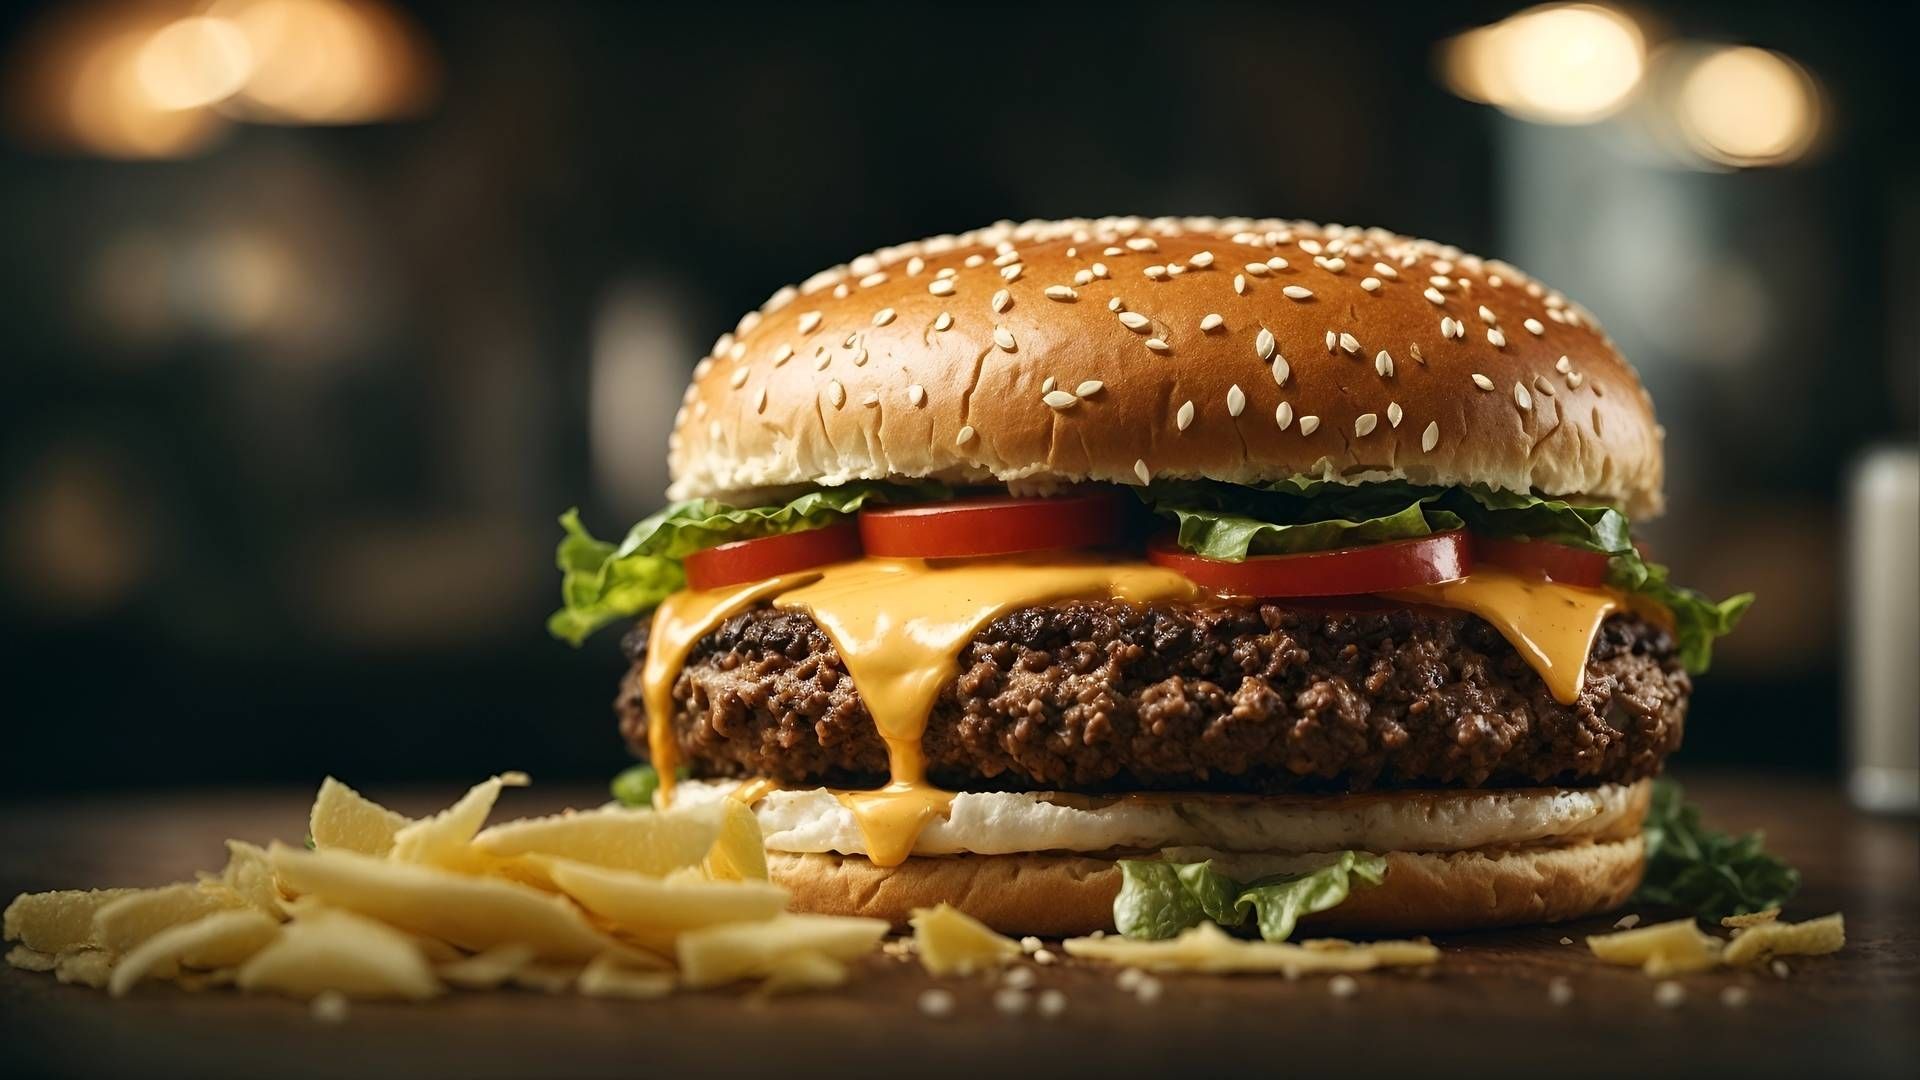 La hamburguesa es una de las comidas más populares y consumidas del mundo y el día para celebrarla se acerca